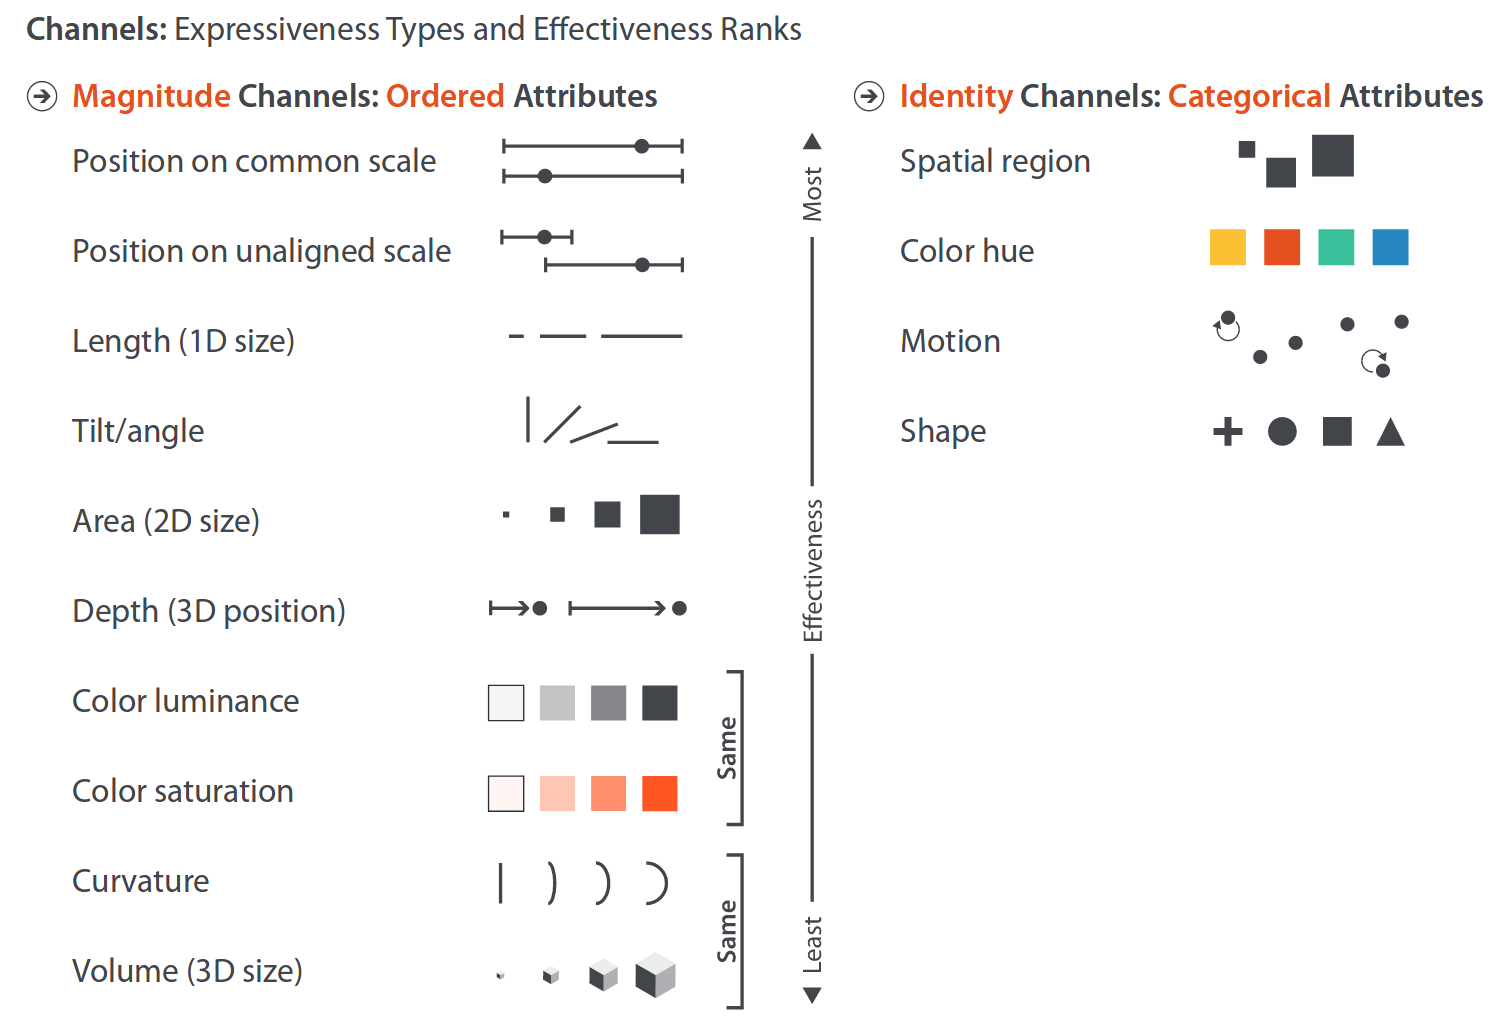 Ranking de canales para magnitud (izquierda) e identidad (derecha). Los mejores canales aparecen en la parte superior. Fuente: Visualization Analysis & Design.